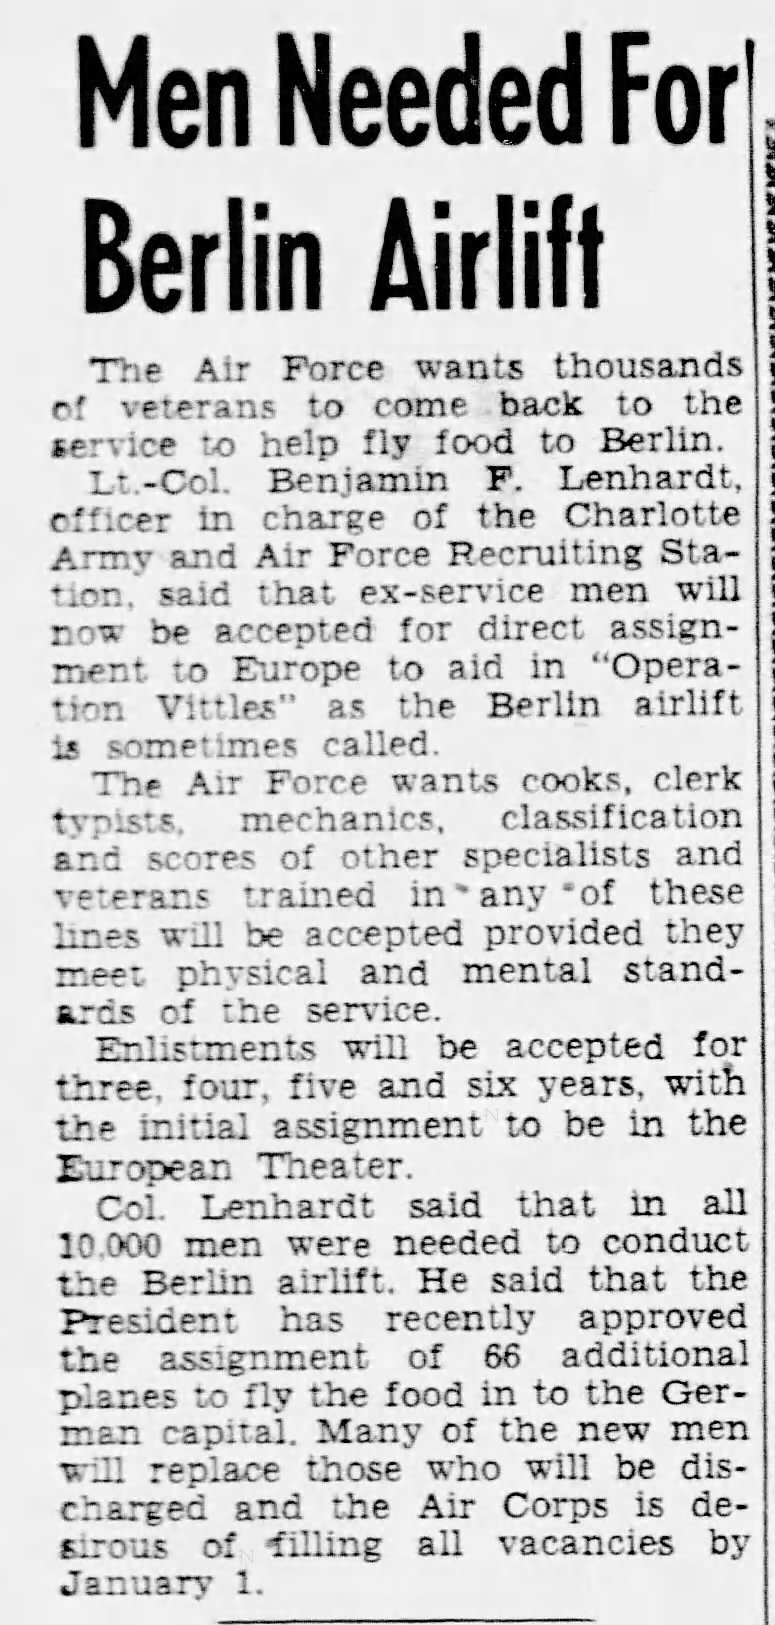 Veterans needed for Berlin Airlift - 1948